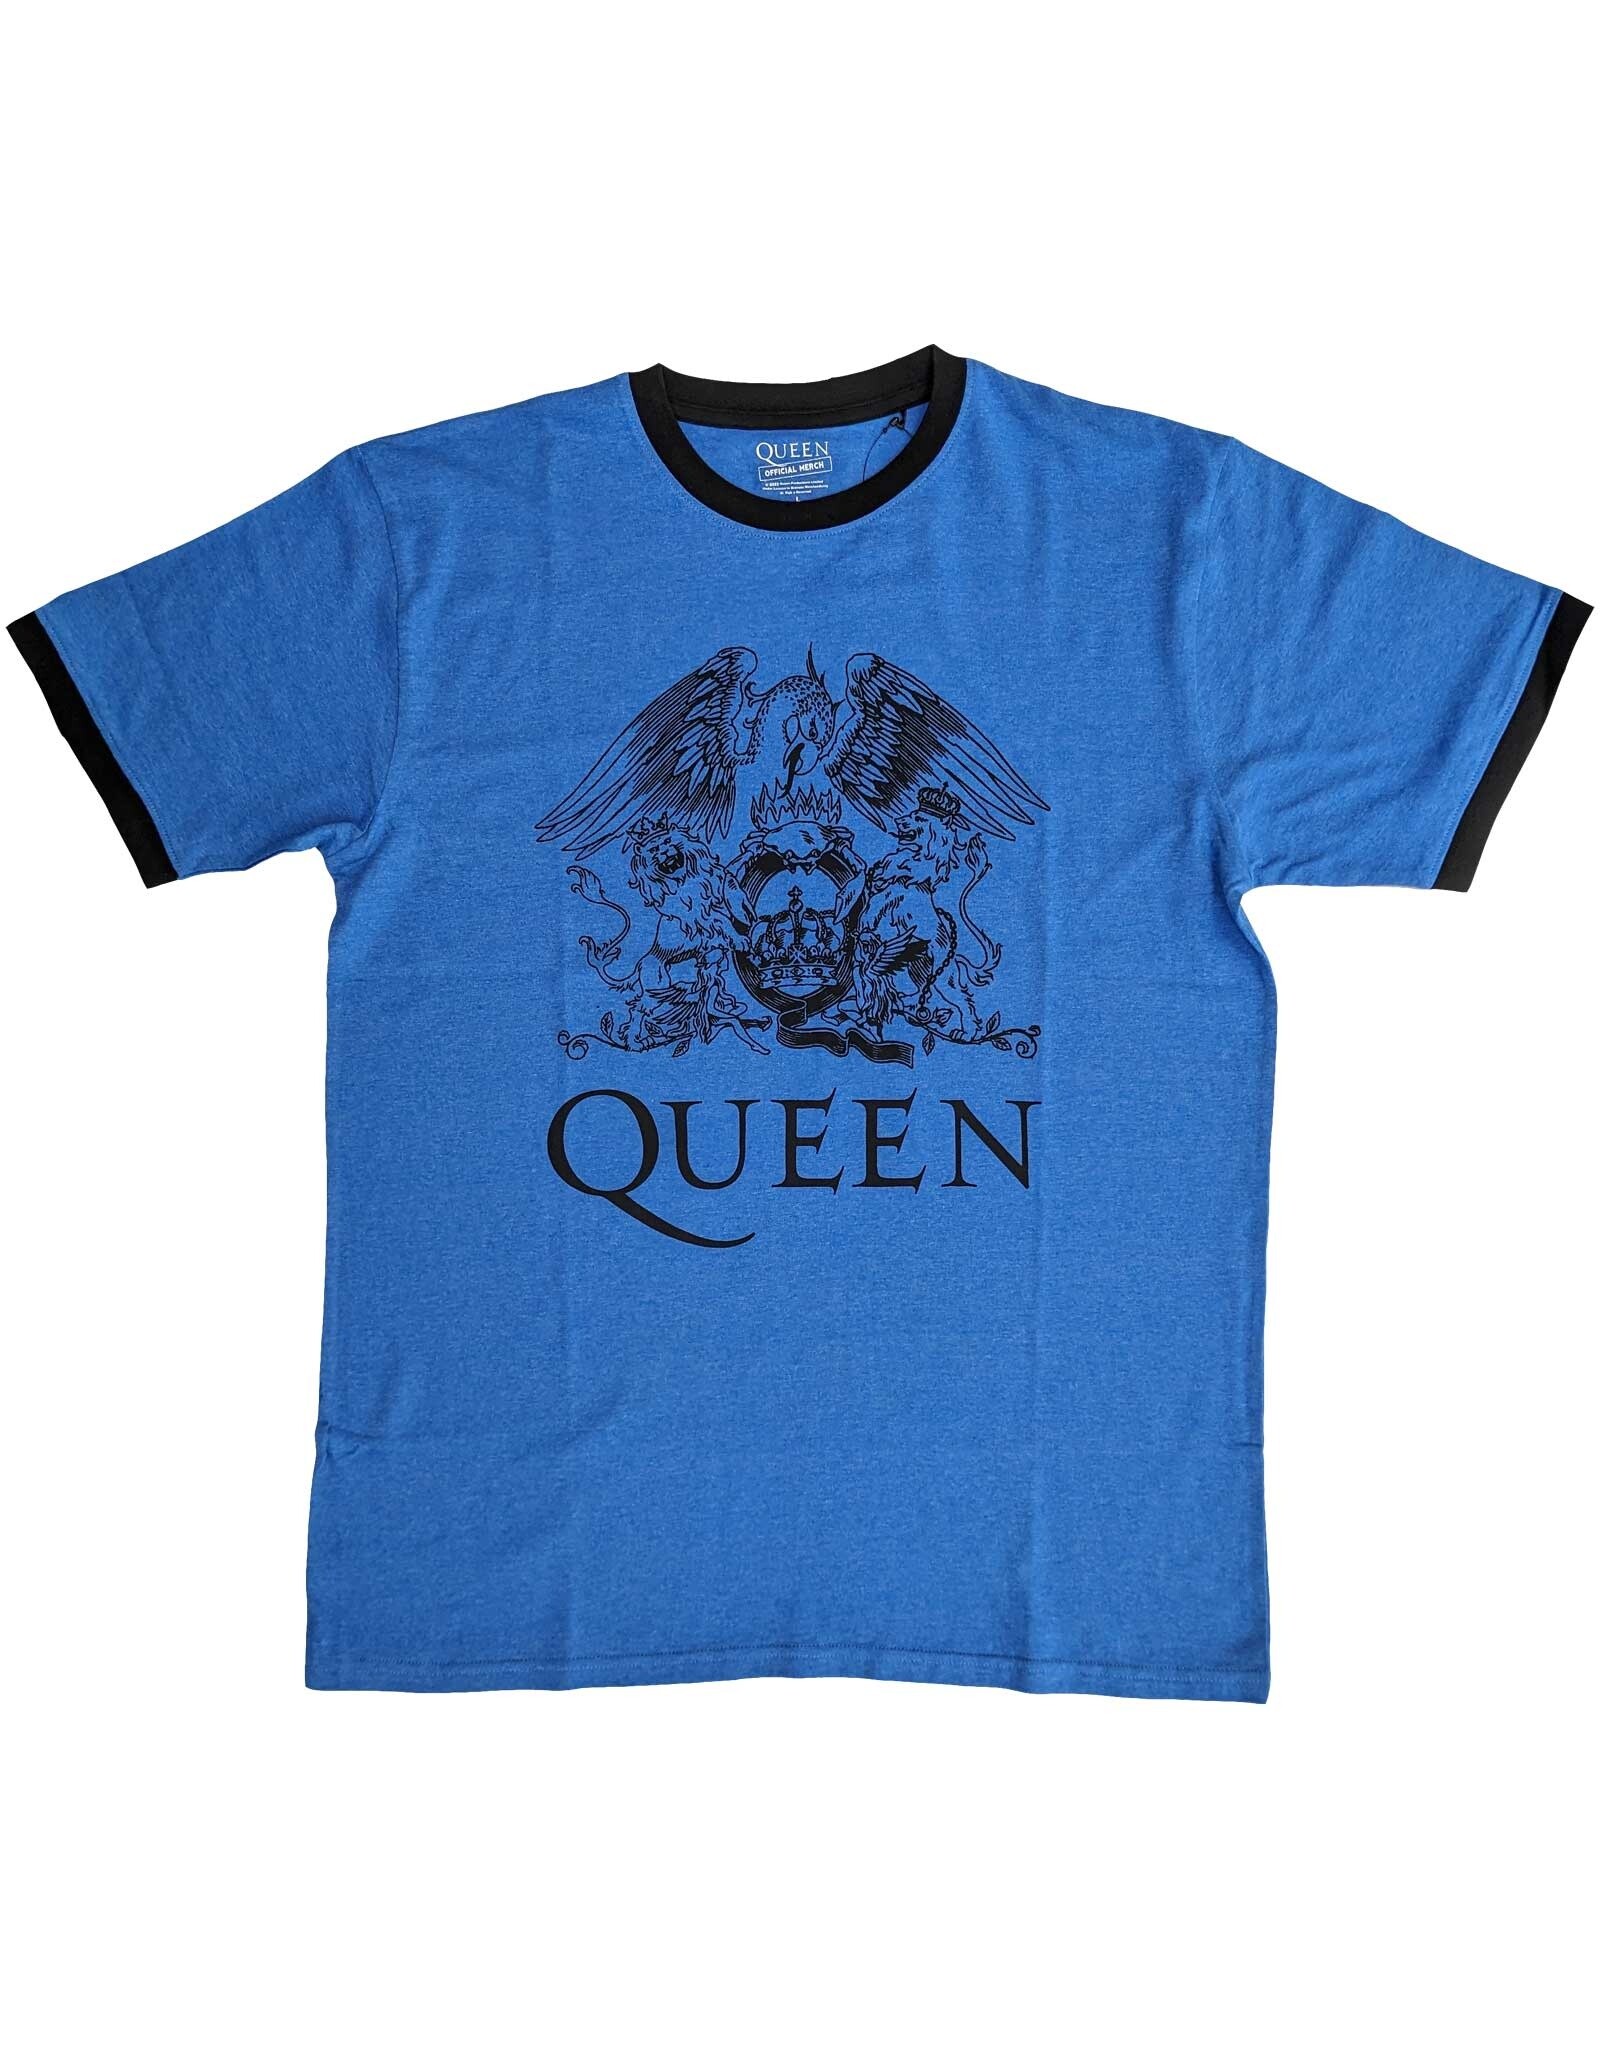 Queen / Crest Logo Ringer Tee